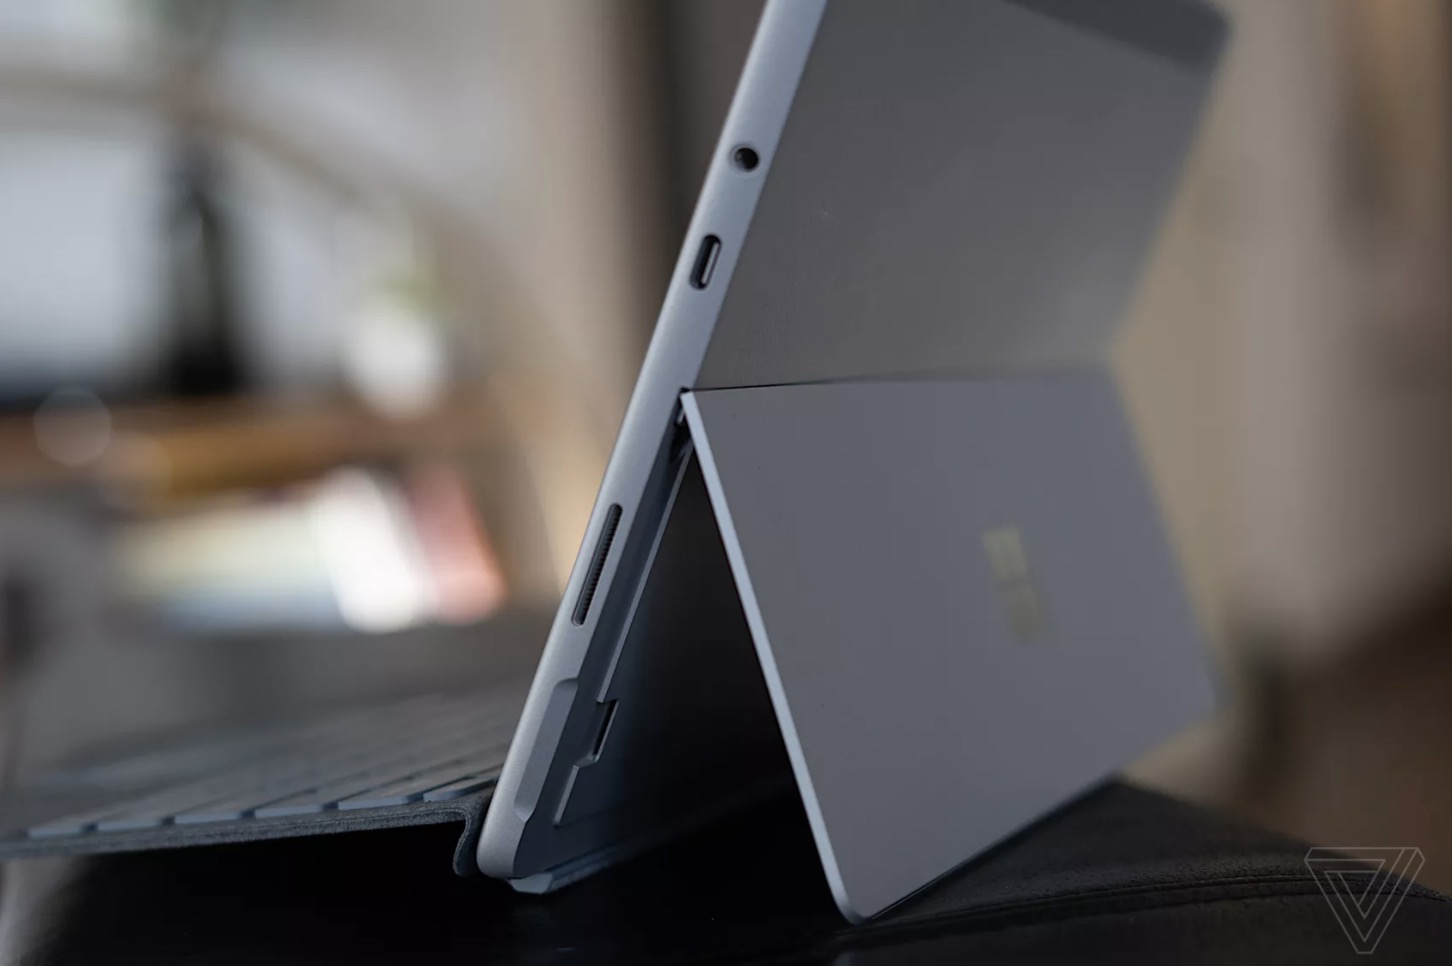 Microsoft Surface
Go 2 ra mắt: Màn hình 10.5 inch, cấu hình nâng cấp, giá từ
399 USD